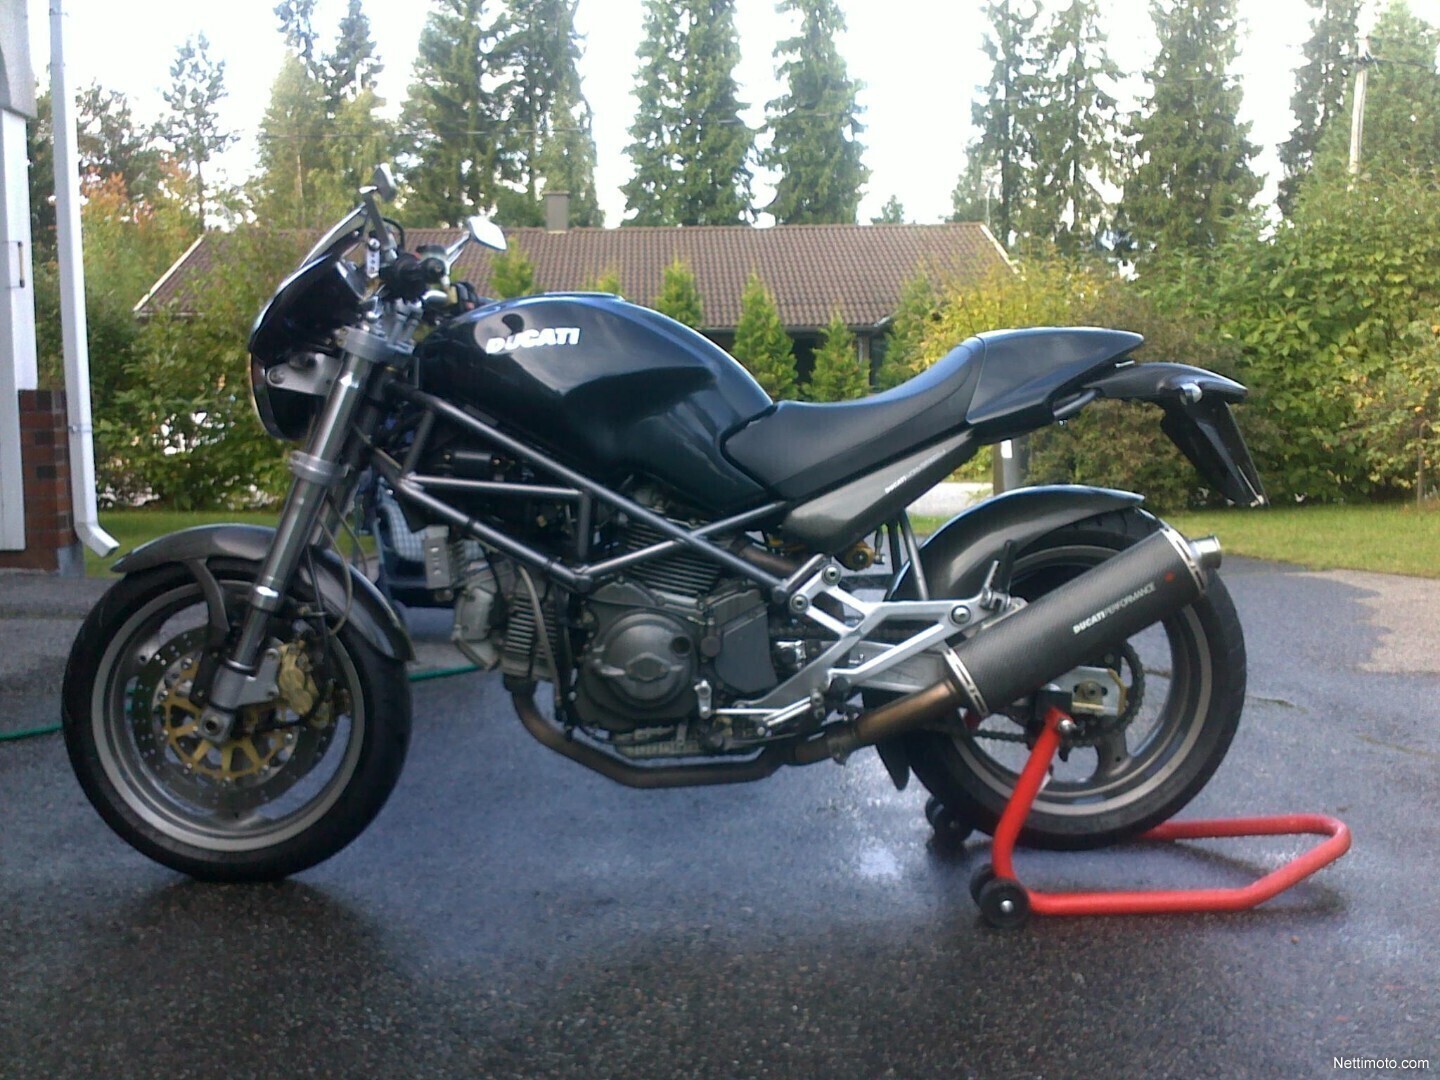 Motorrad & Reisen Magazin | Userbikes | Ducati Monster 900 